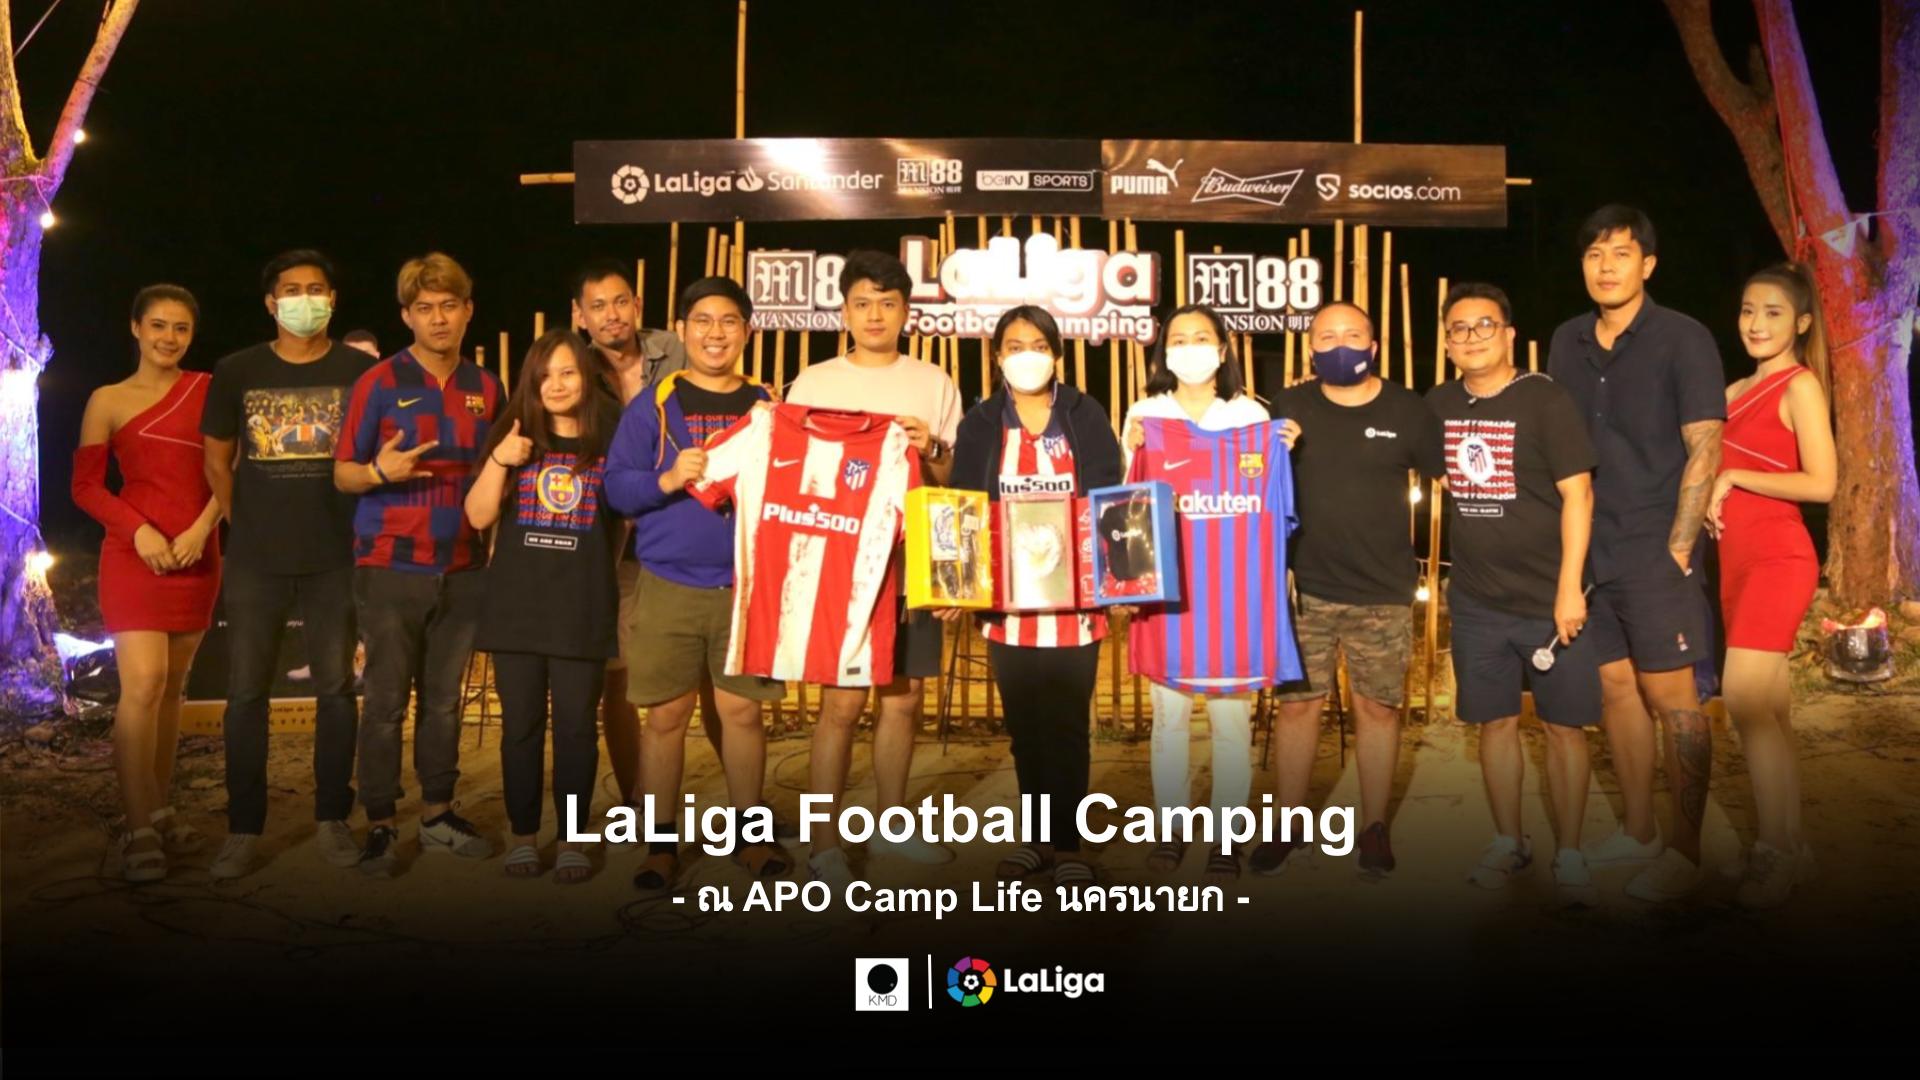 LaLiga Football Camping